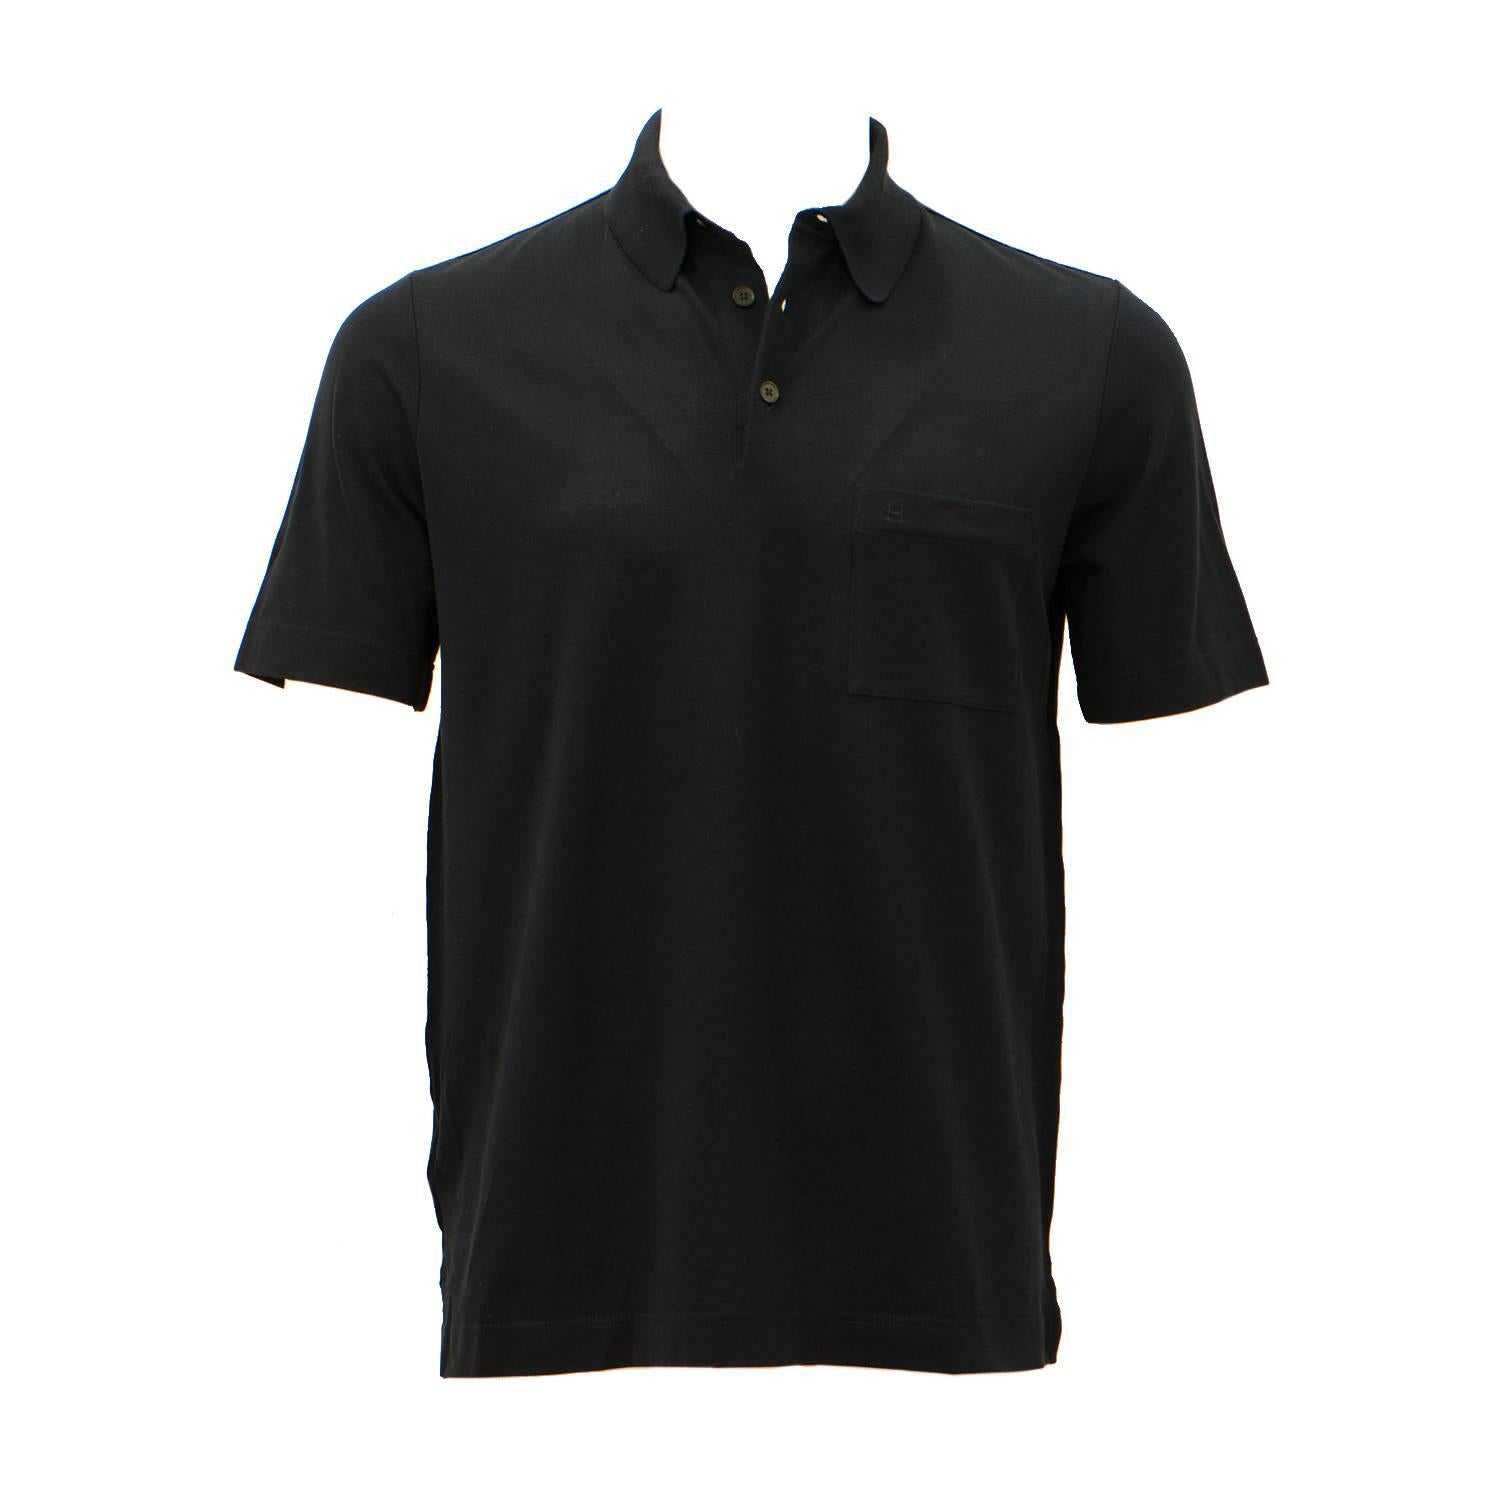 Hermes T-Shirt Ras du Cou Pique de Cotton Size M Color Marine 2016. For Sale